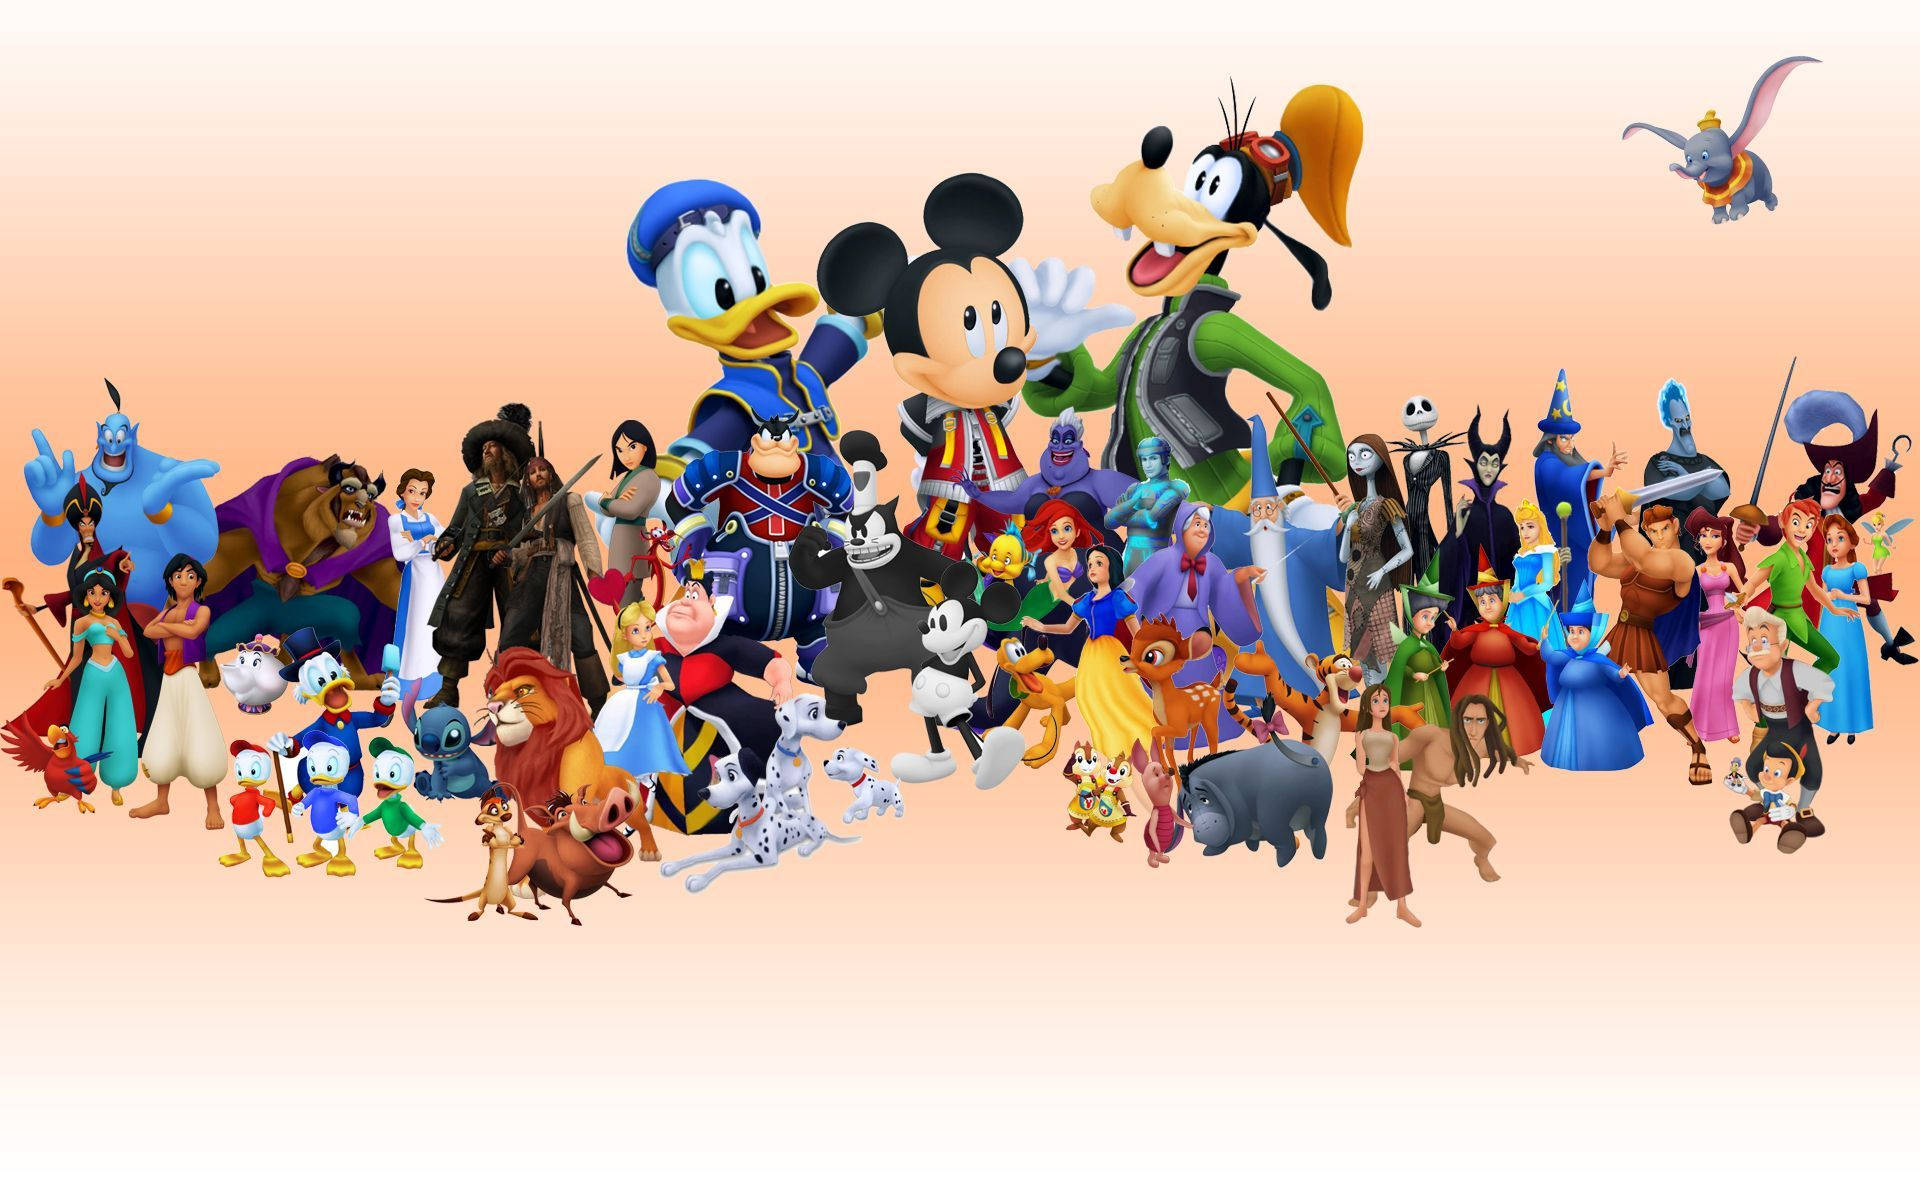 Personajesde Walt Disney En Calidad 4k, Dibujos Animados. Fondo de pantalla